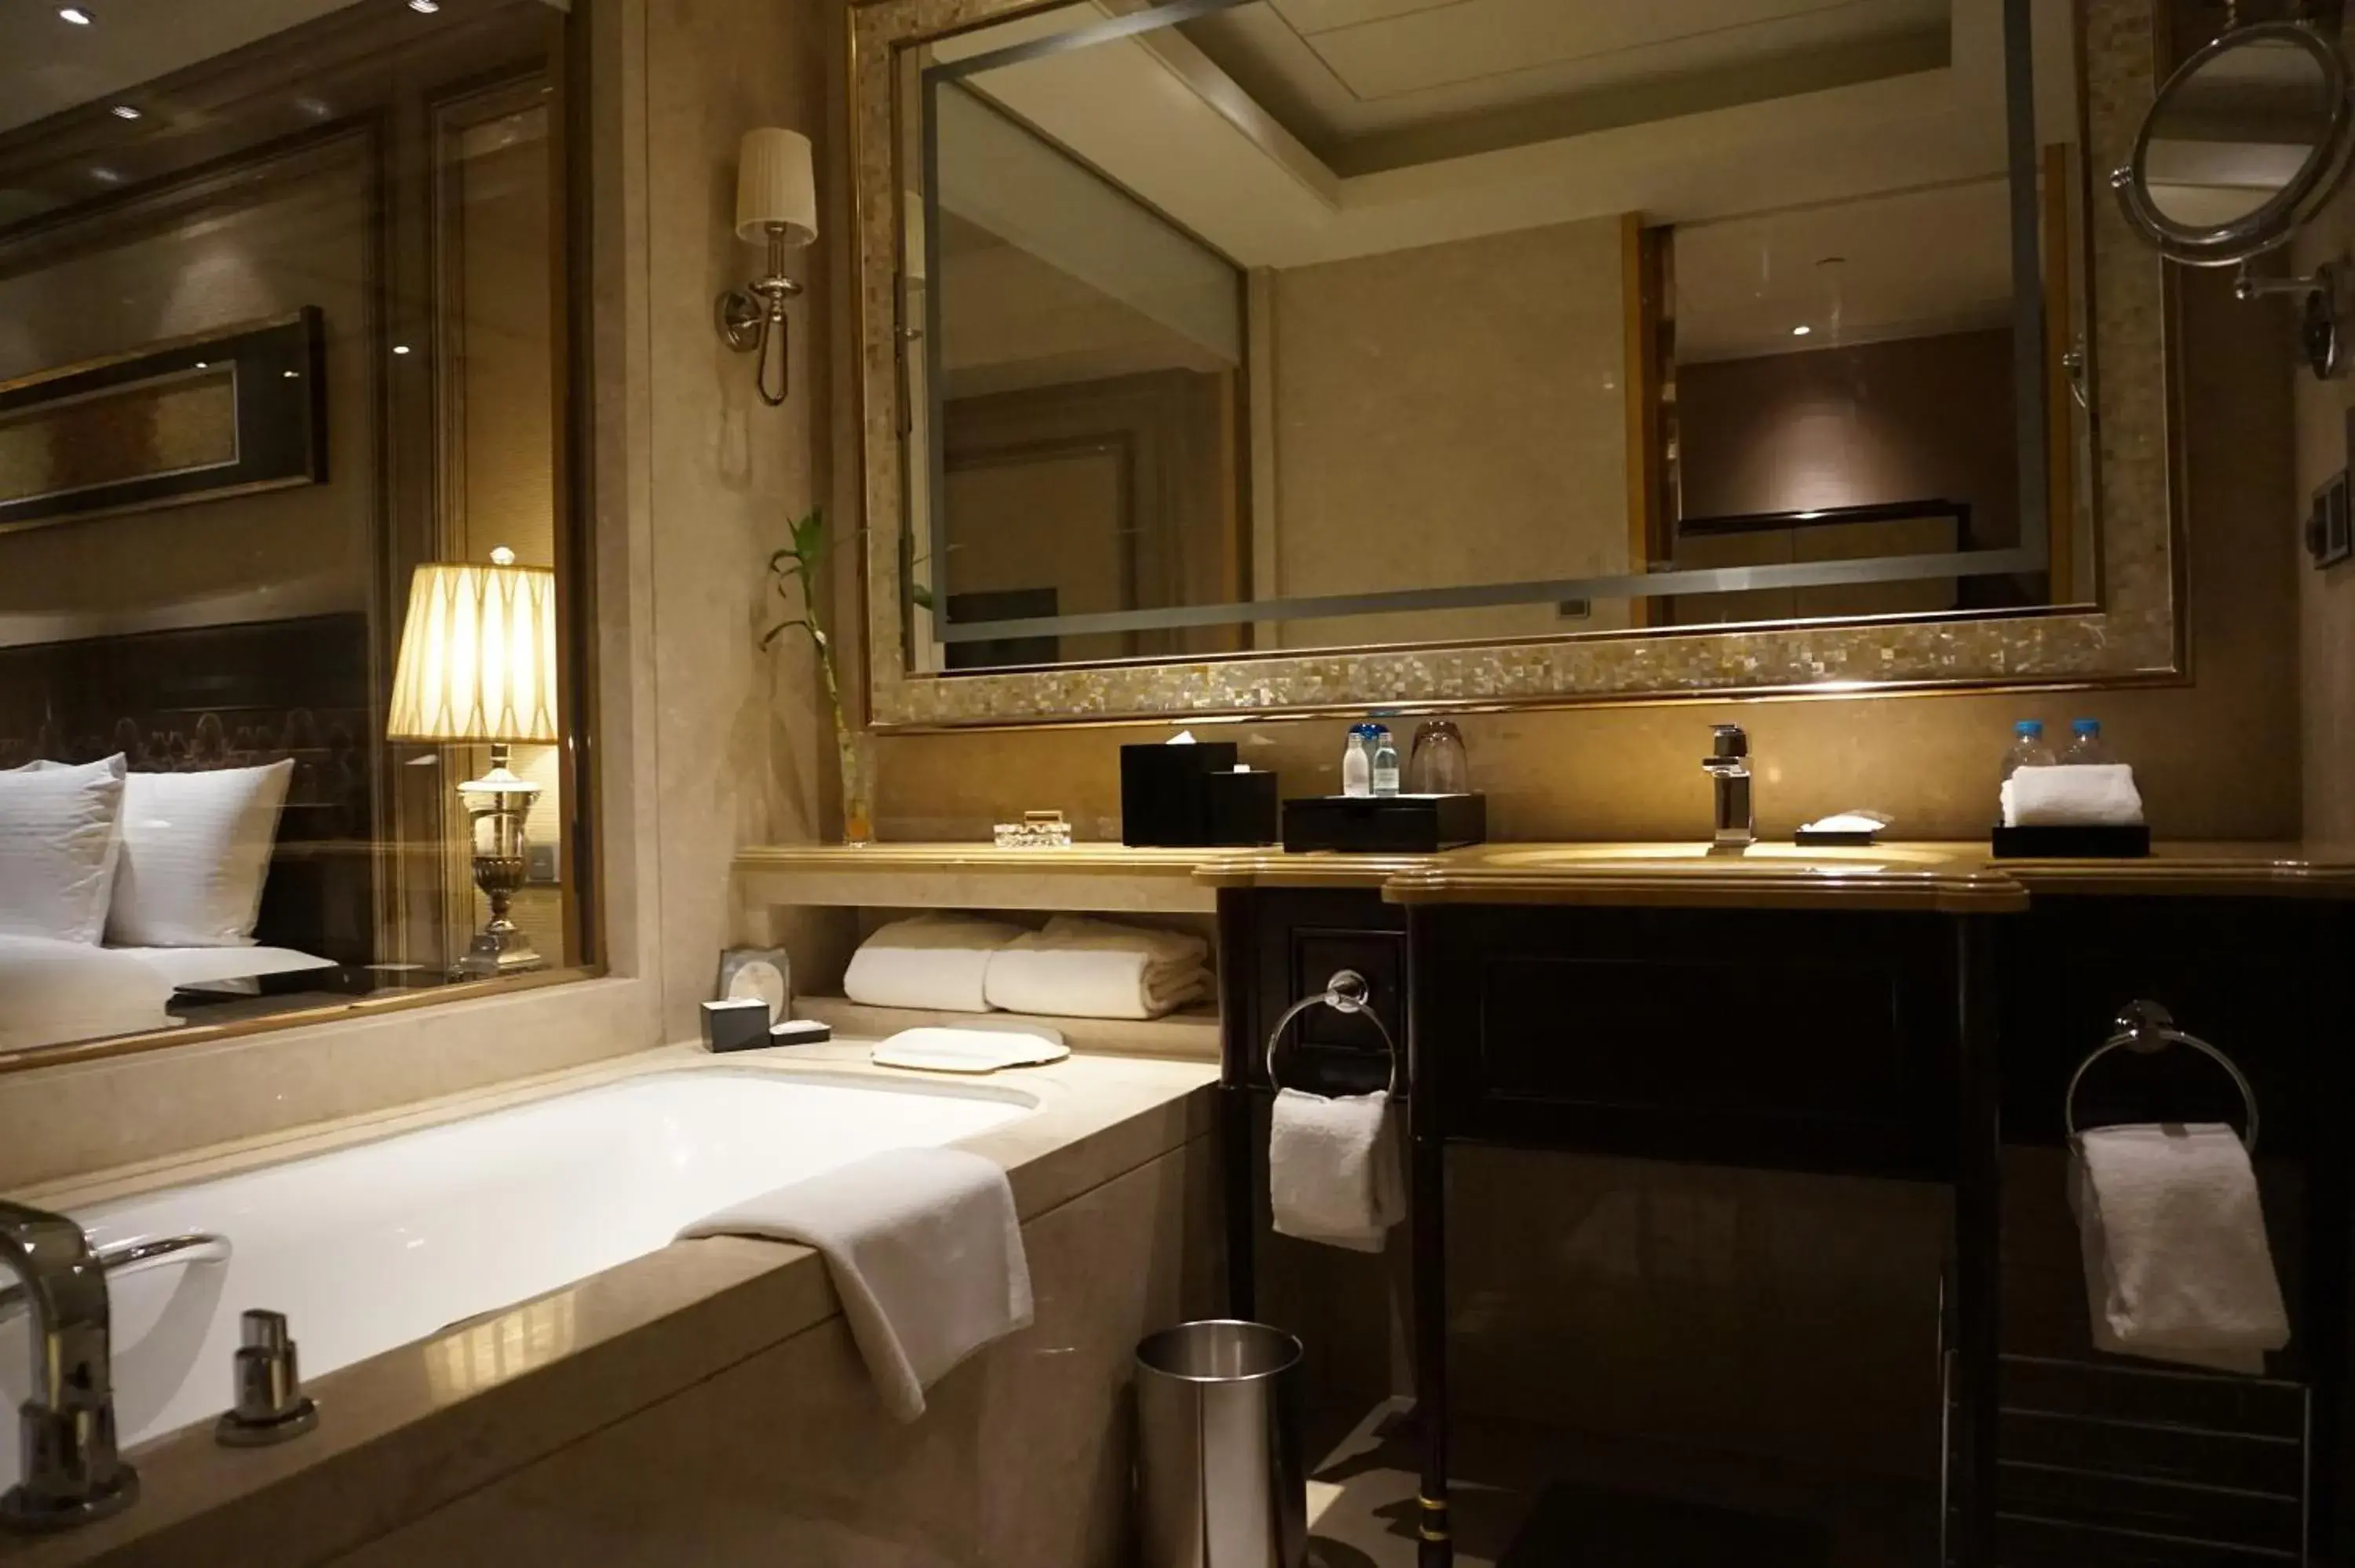 Bathroom in Wanda Realm Harbin Hotel